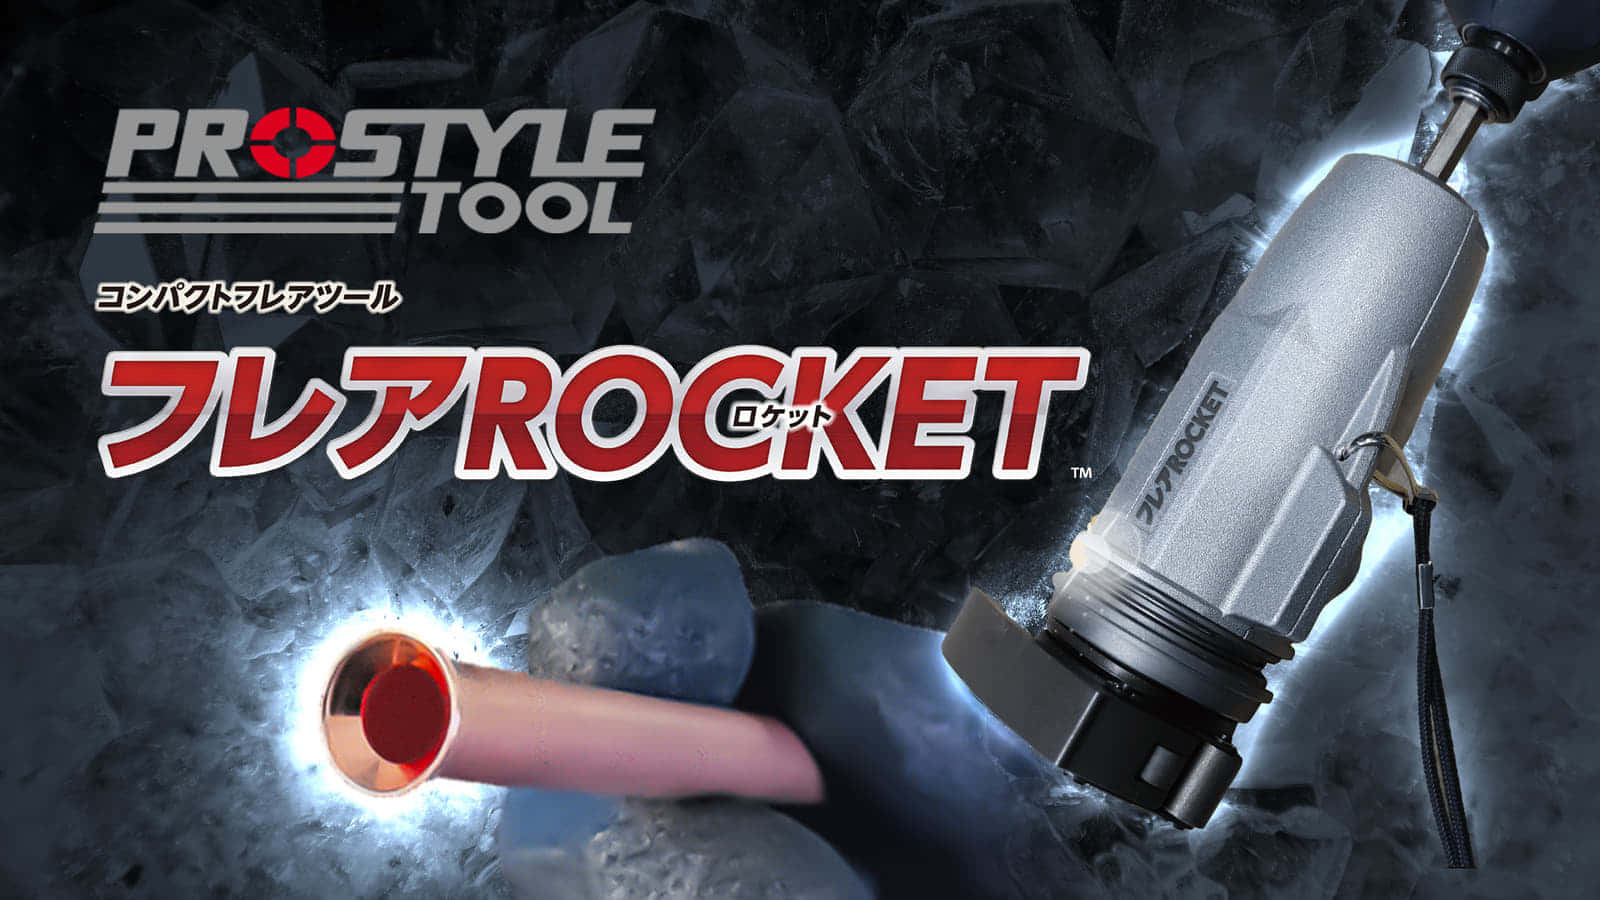 PROSTYLE TOOL フレアロケットを発売、インパクトドライバでワンタッチフレア加工